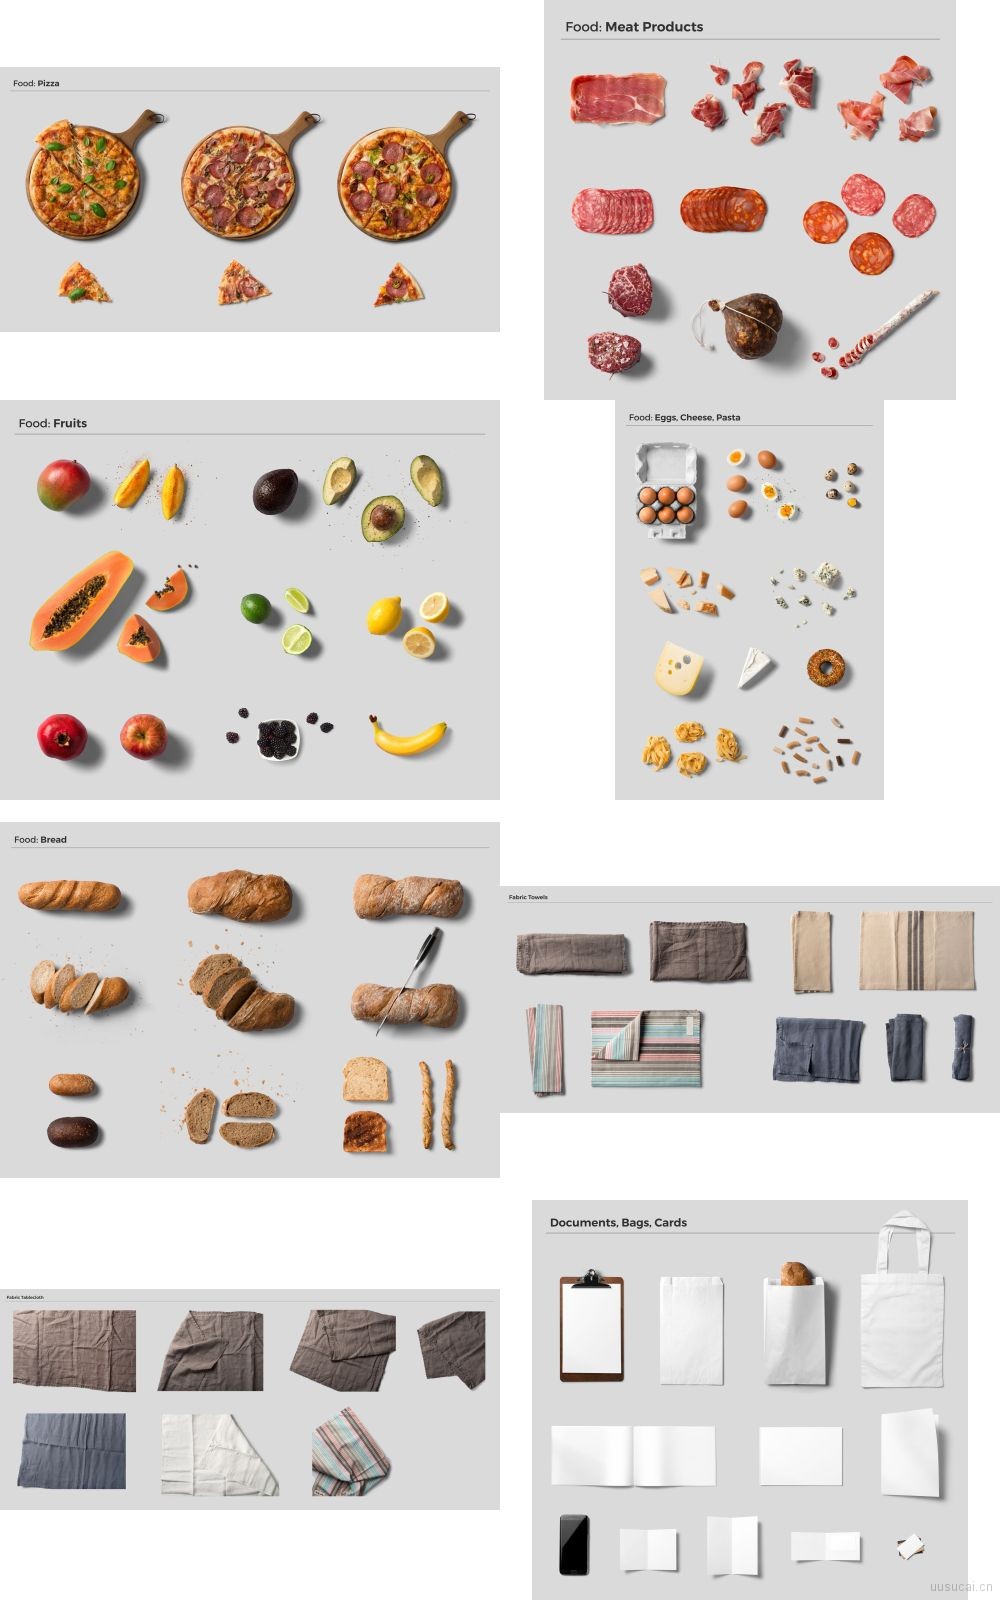 43款精品美食餐饮食物牛排西餐菜单海报广告设计psd模板高清图片合成素材 平面素材下载